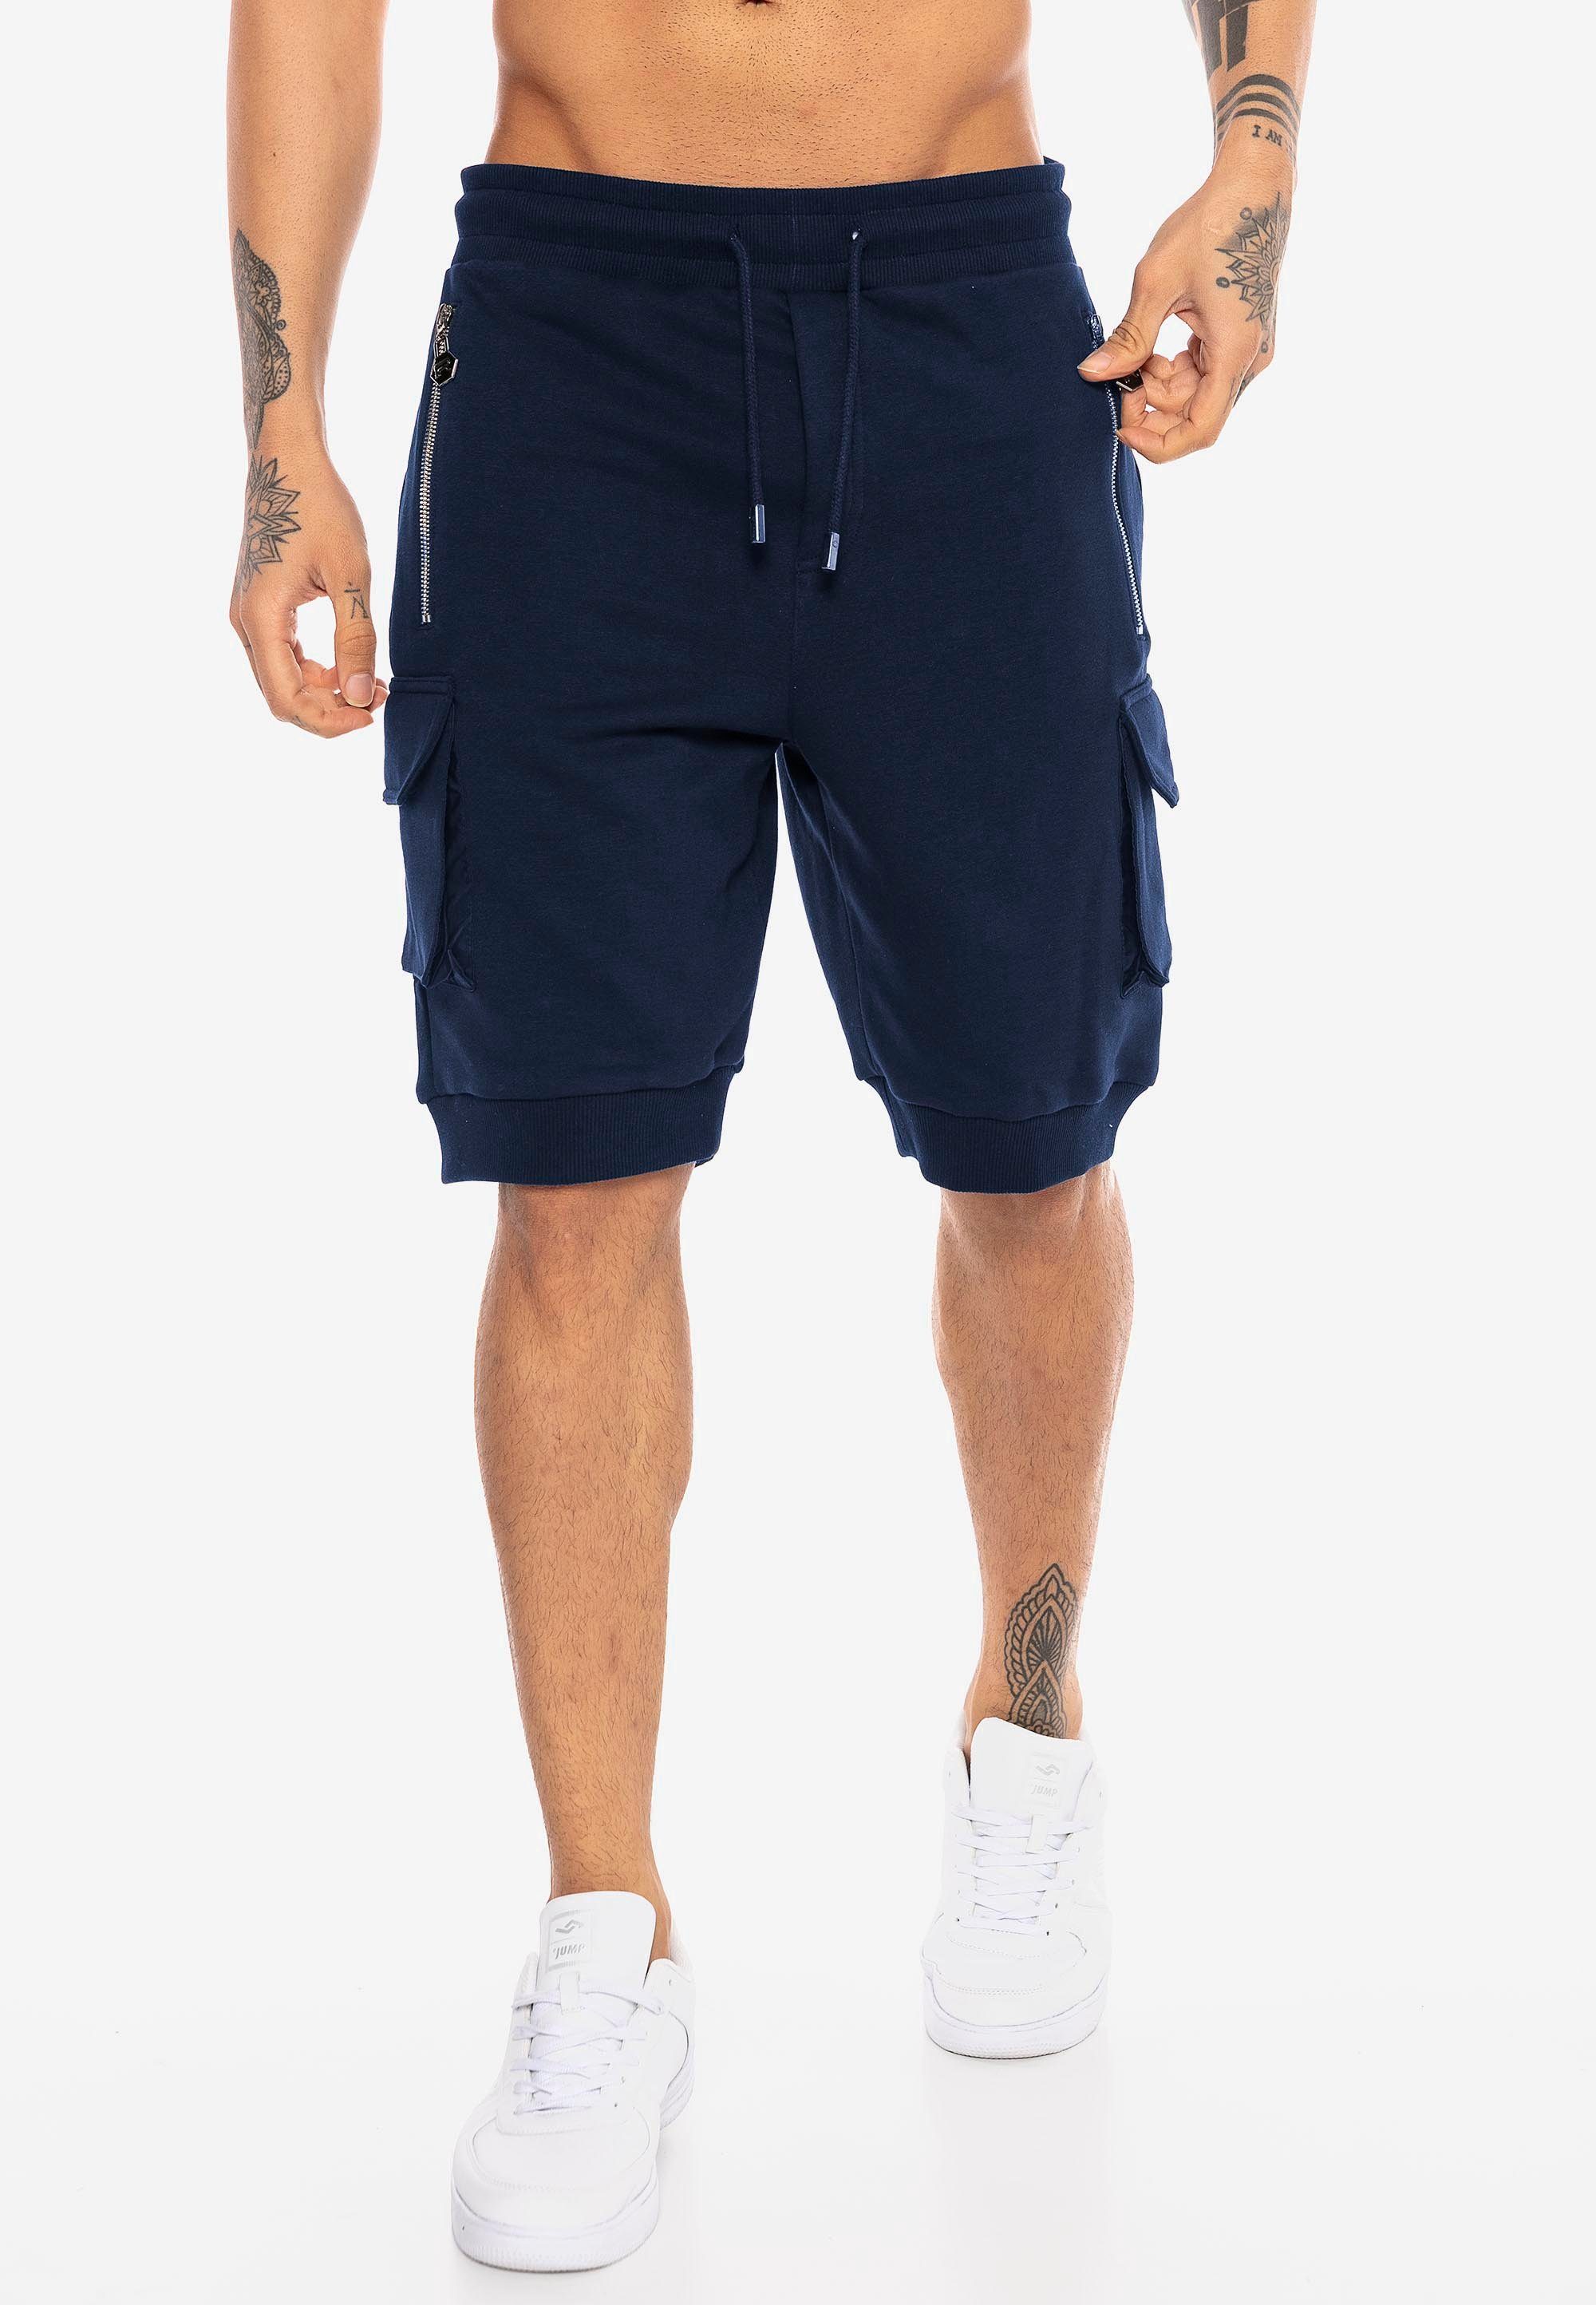 RedBridge Shorts mit Rippstrickbündchen am dunkelblau Beinabschluss